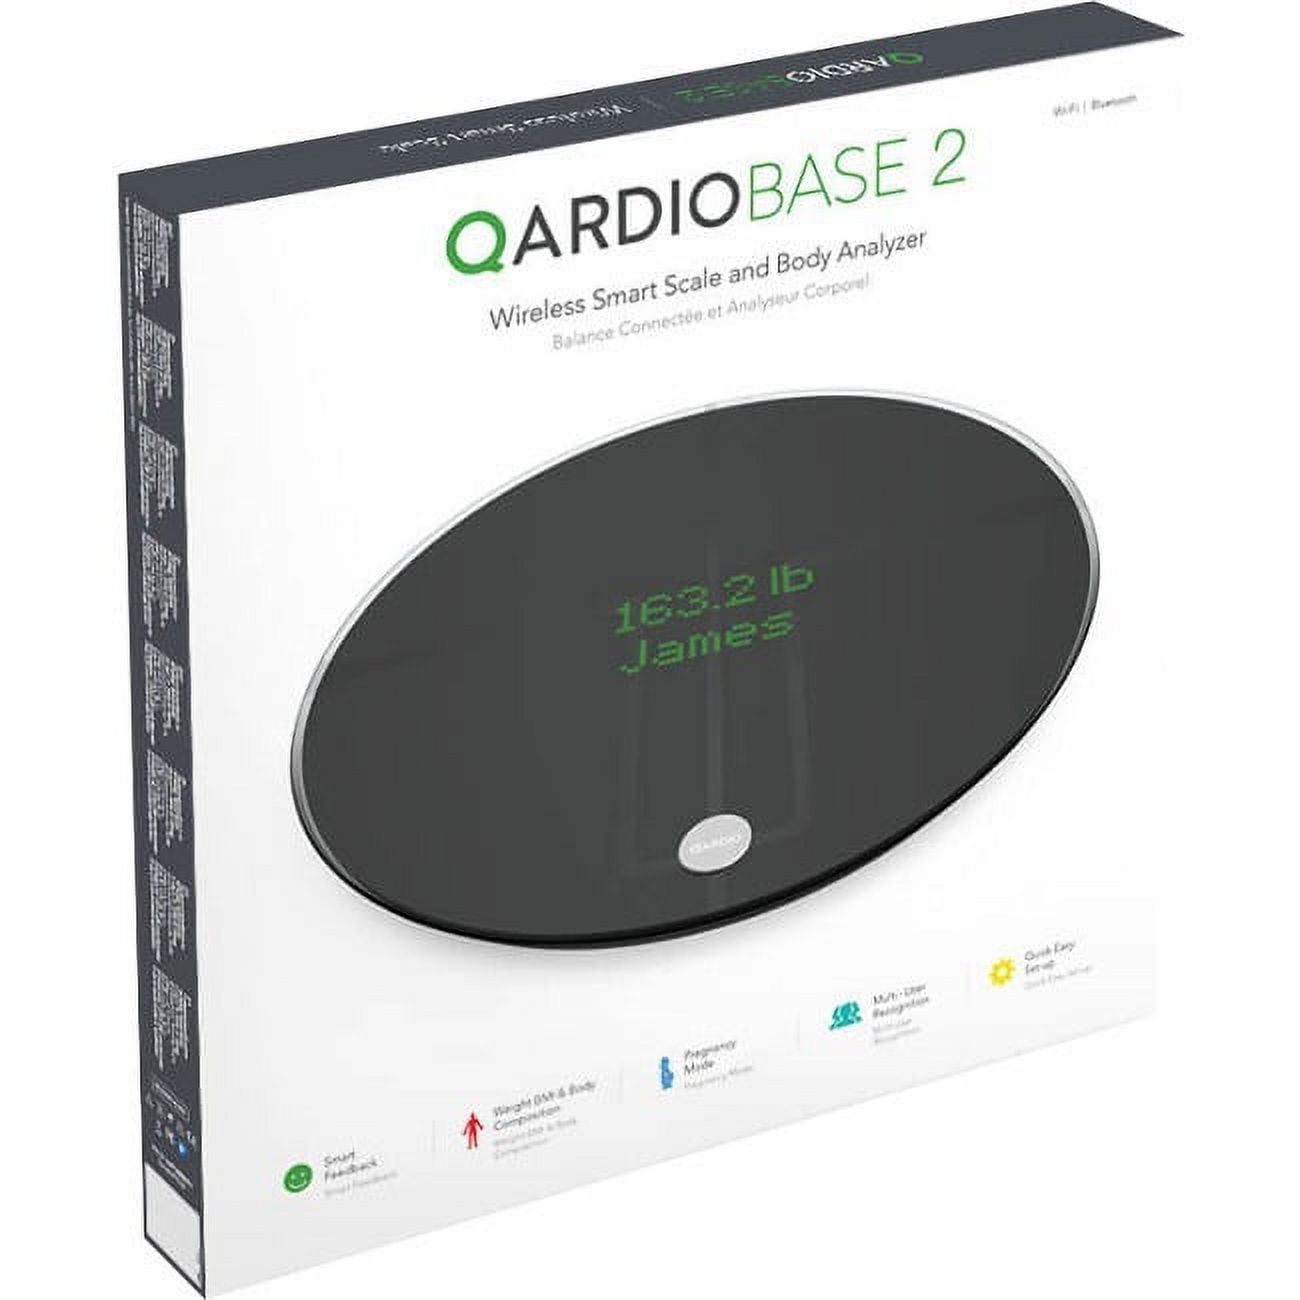 QardioBase 2 Wireless Smart Scale and Body Analyzer - Volcanic Black 